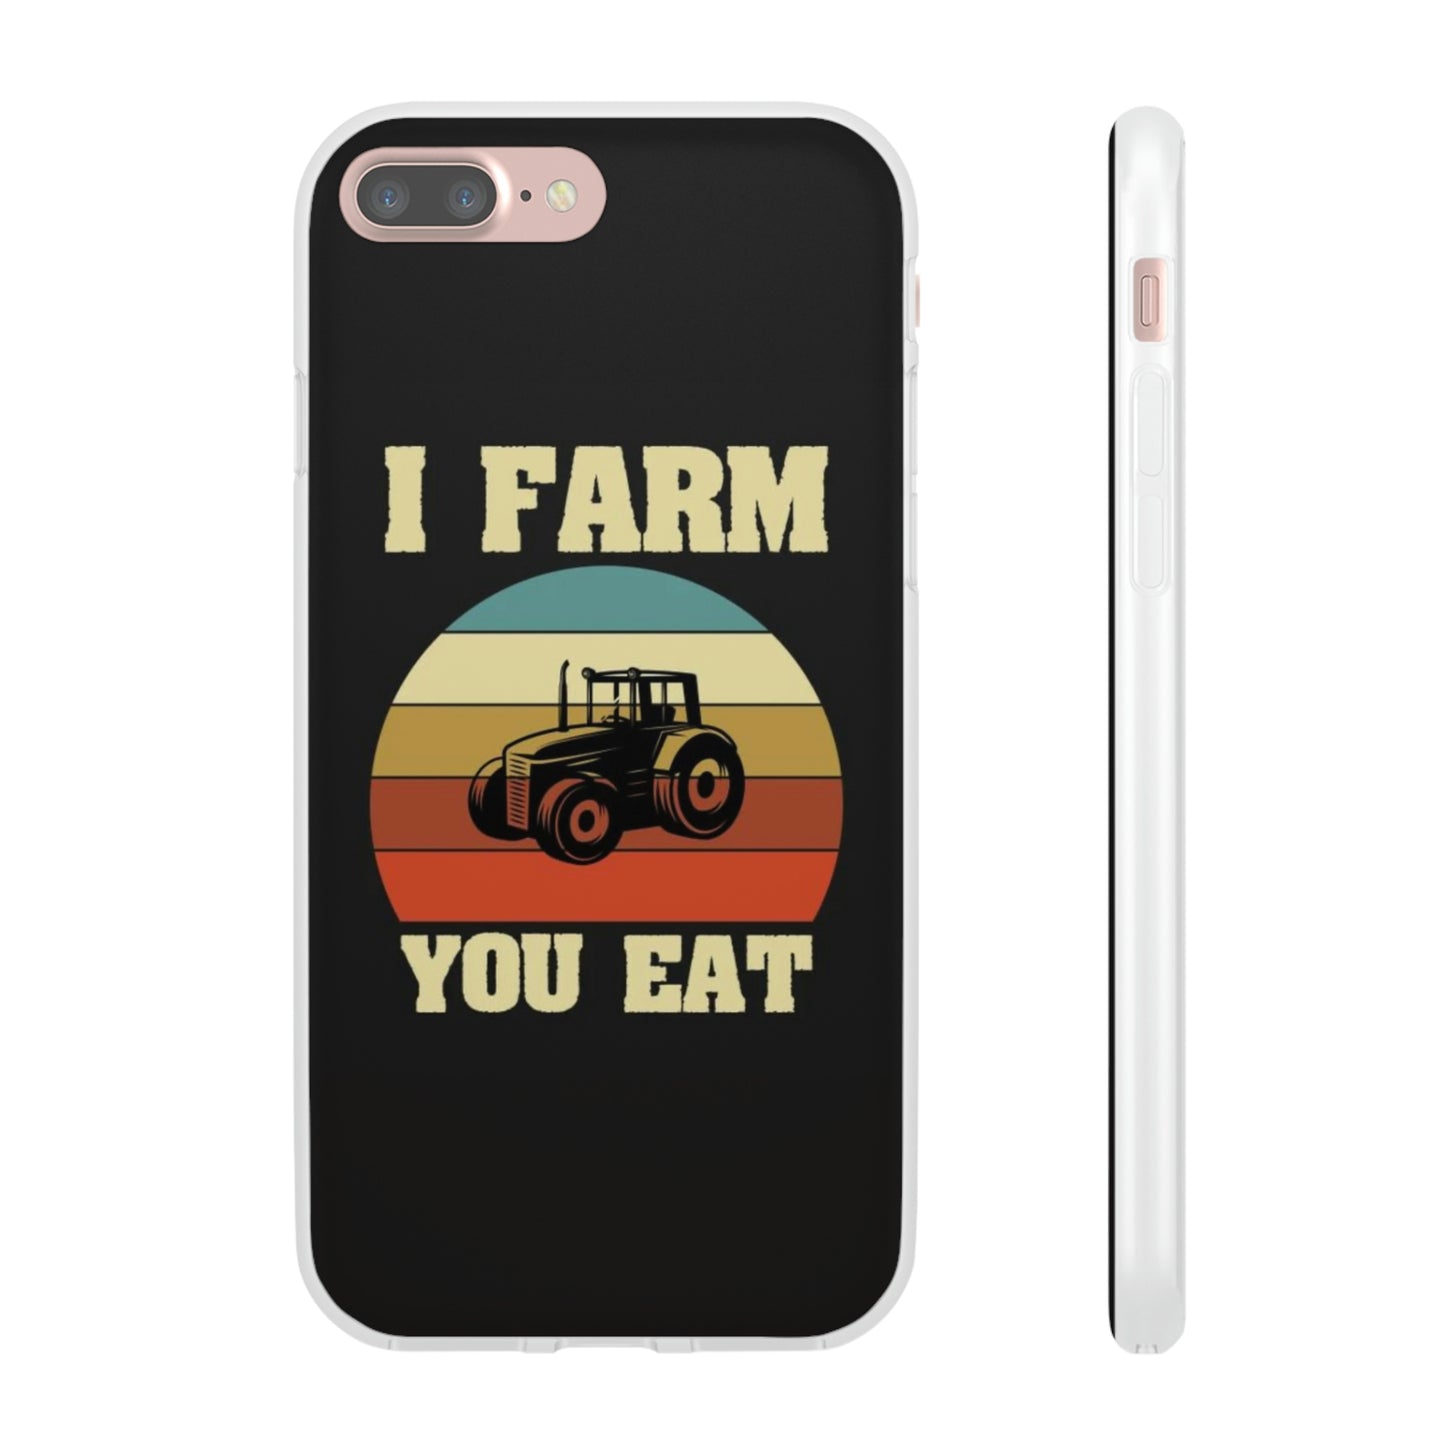 I Farm, You Eat - iPhone